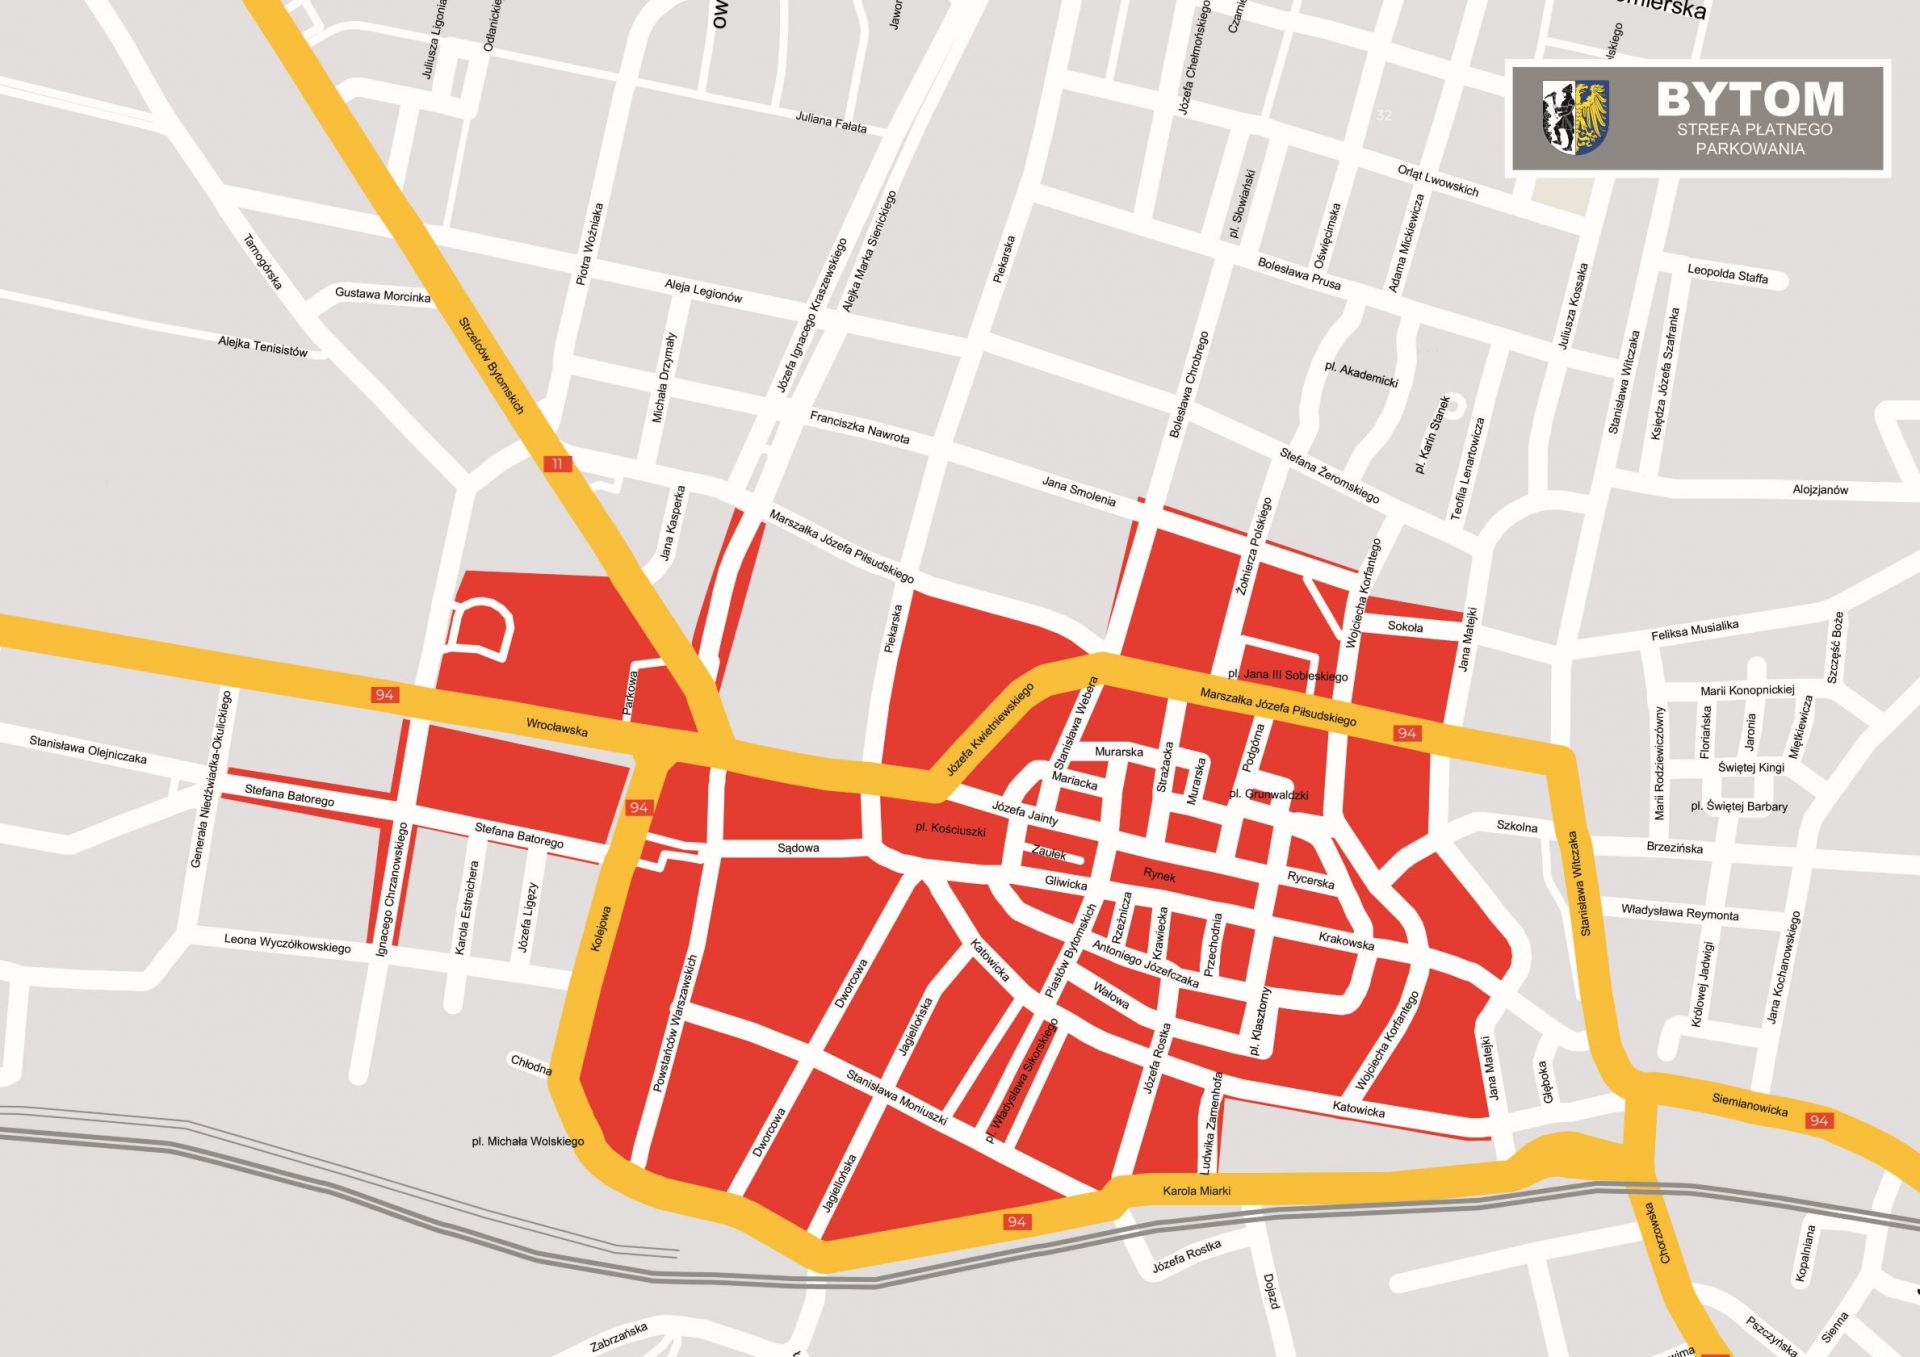 Mapa Strefy Płatnego Parkowania